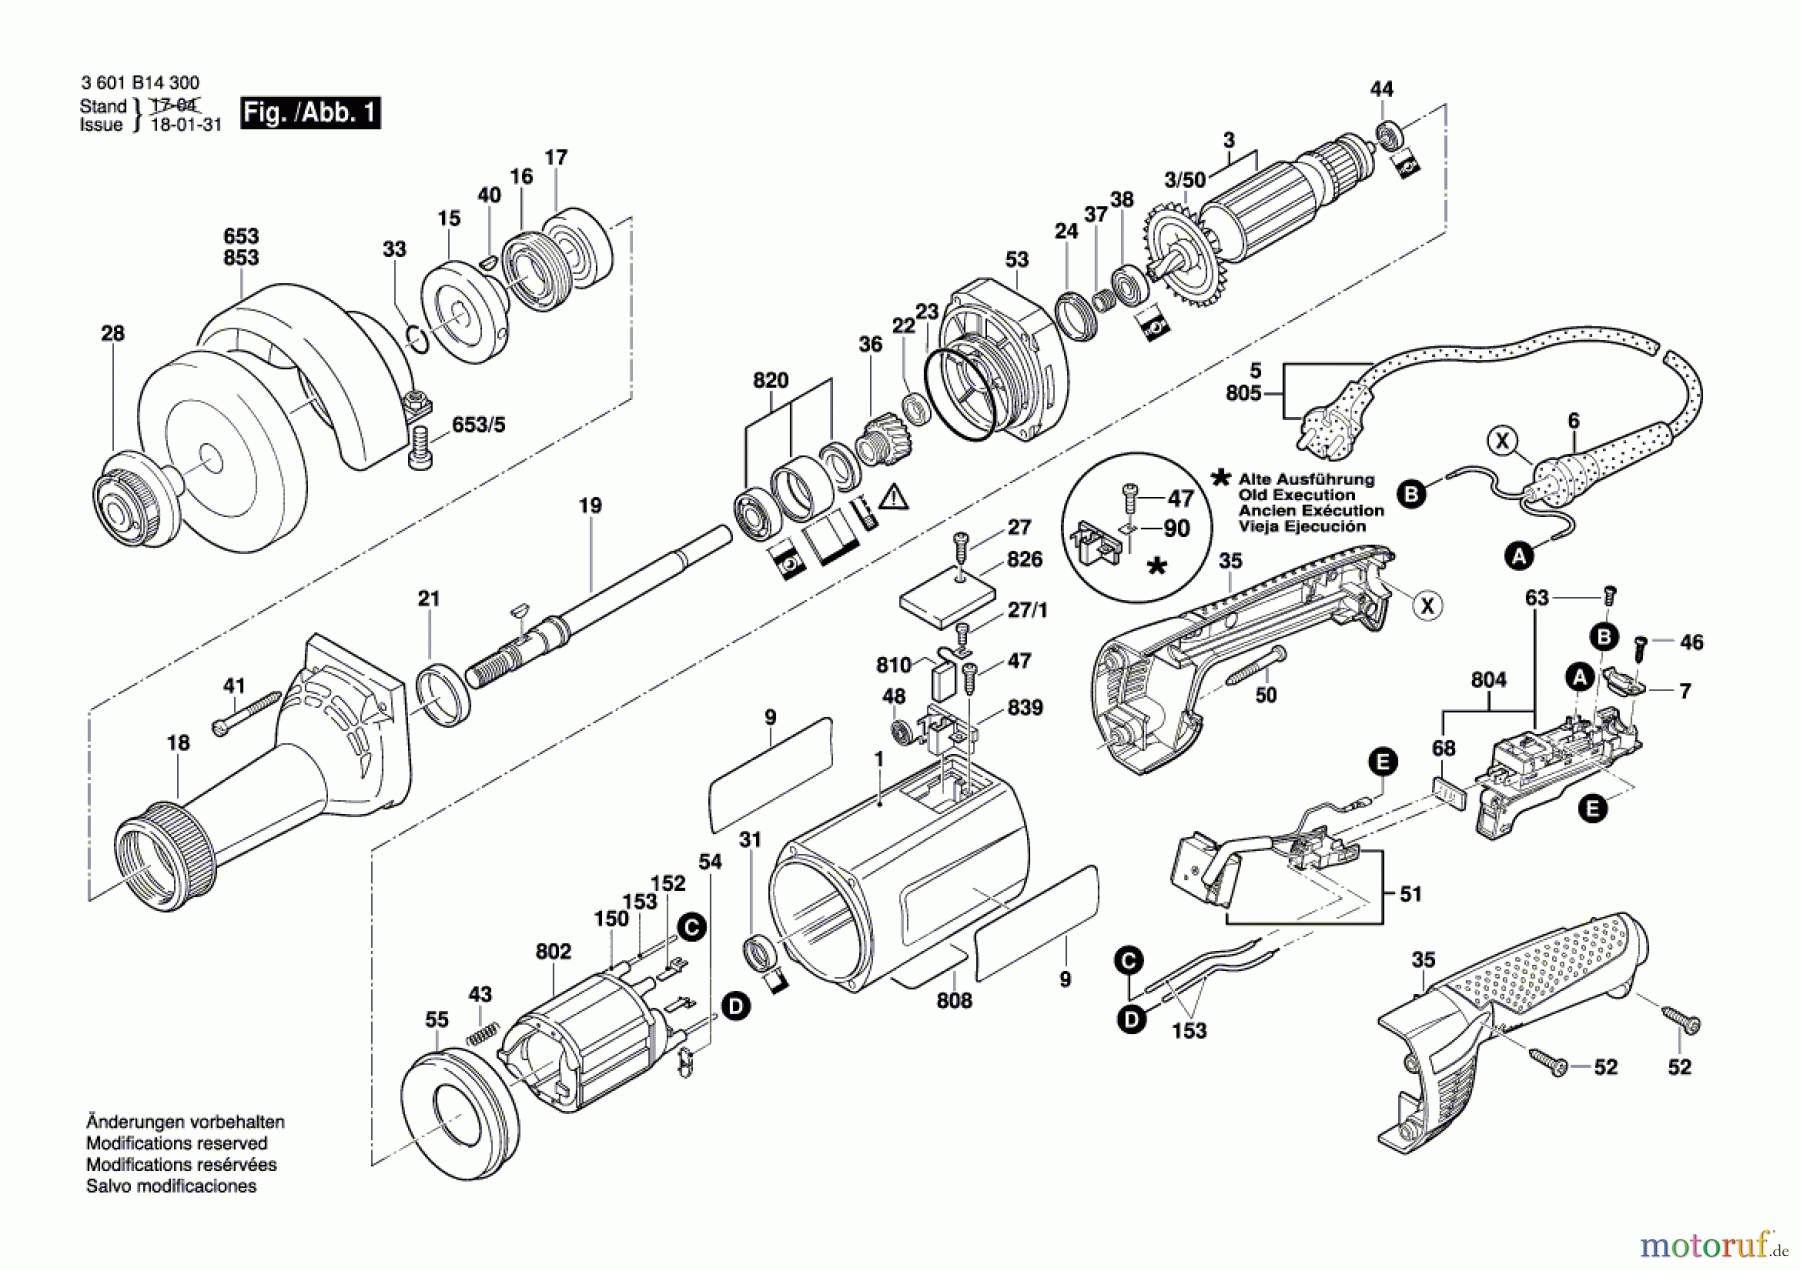  Bosch Werkzeug Hf-Geradschleifer GERADSCHLEIFER GGS 8 SH Seite 1